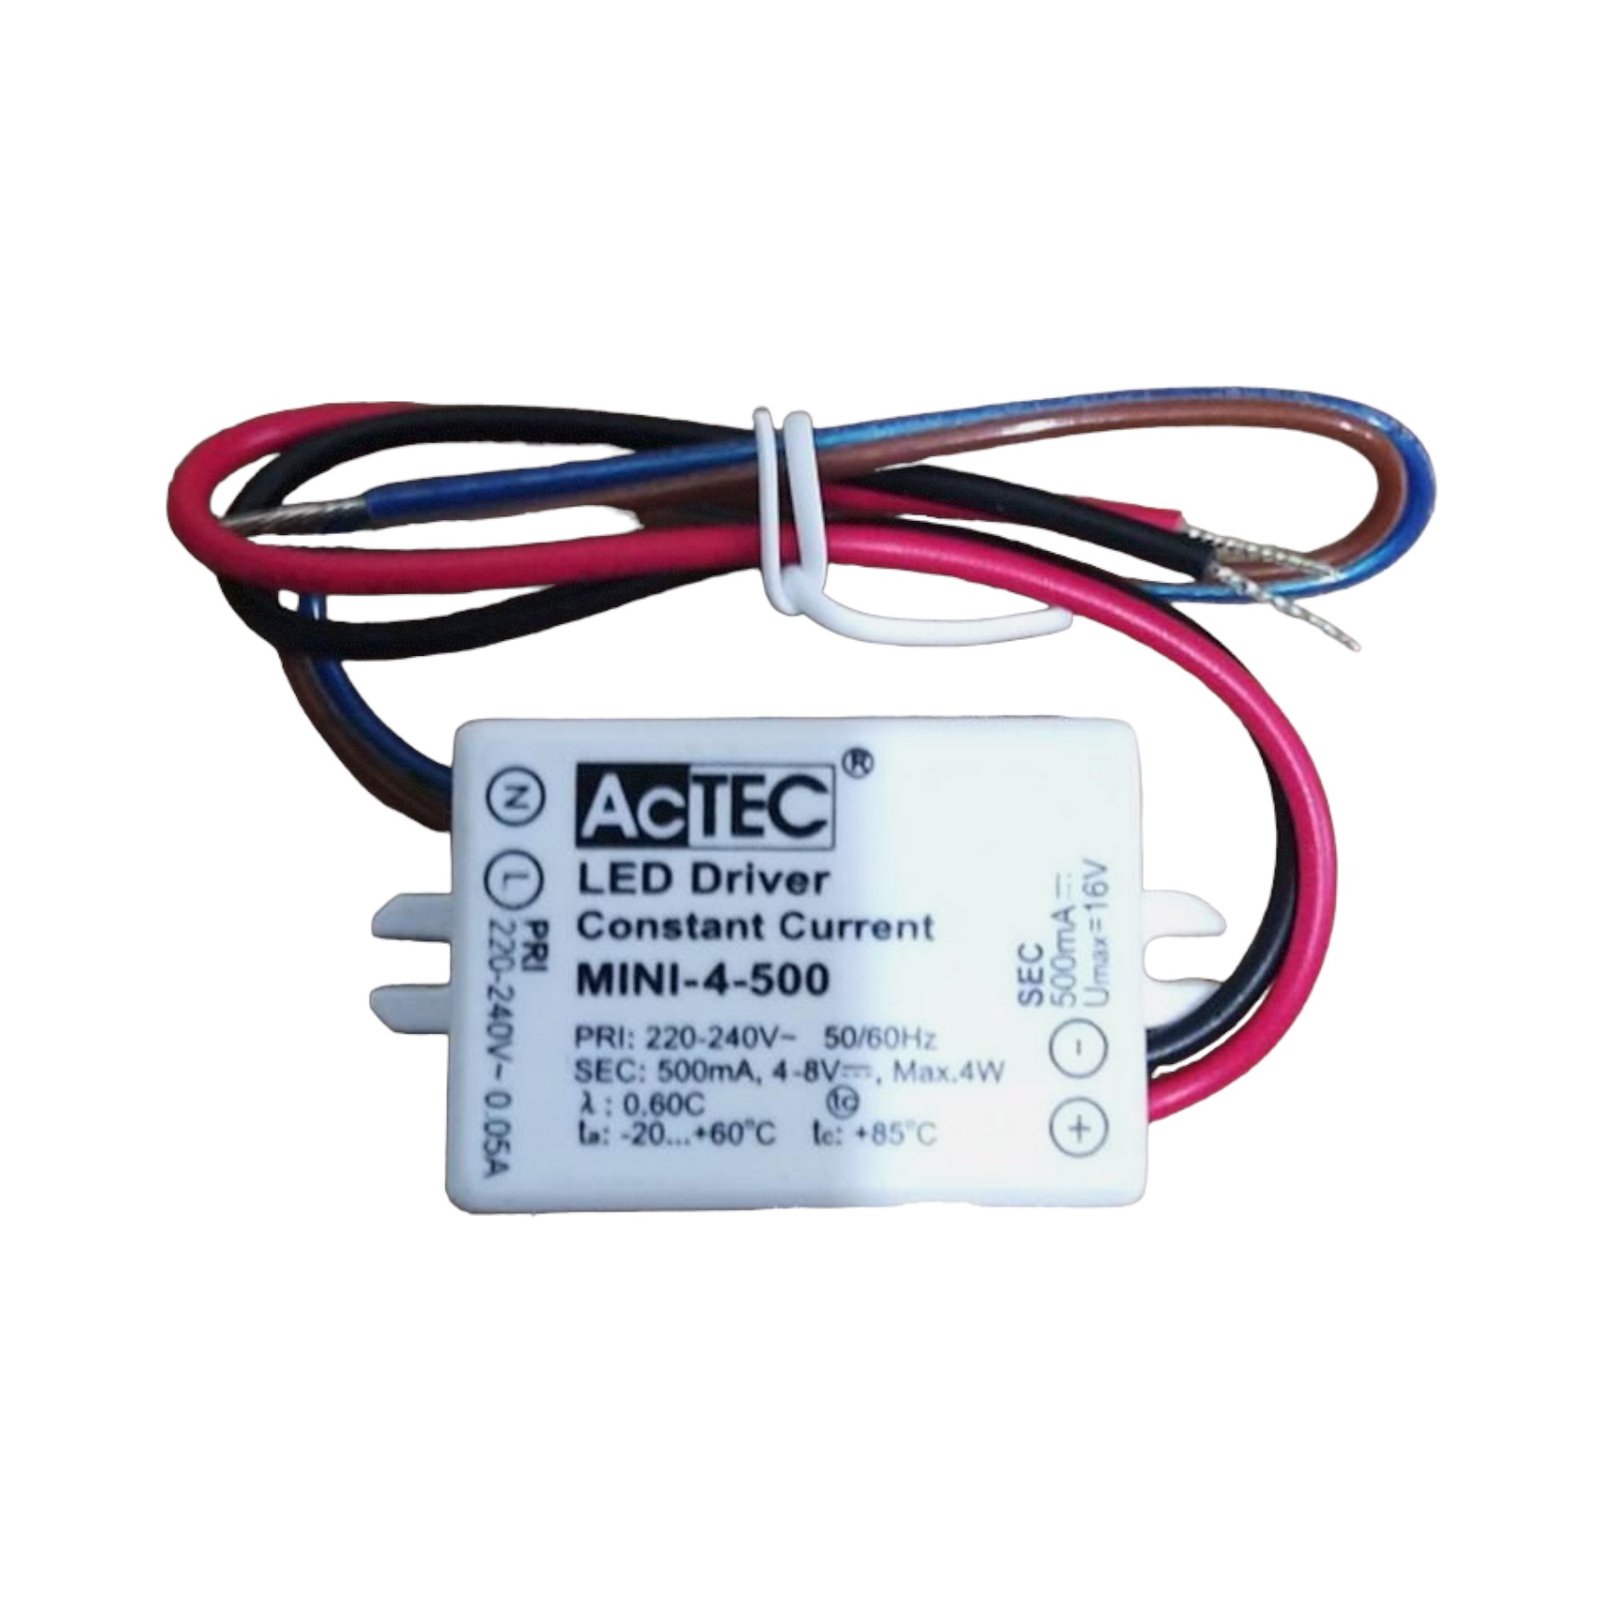 AcTEC Mini LED budič CC 500mA, 4 W, IP65